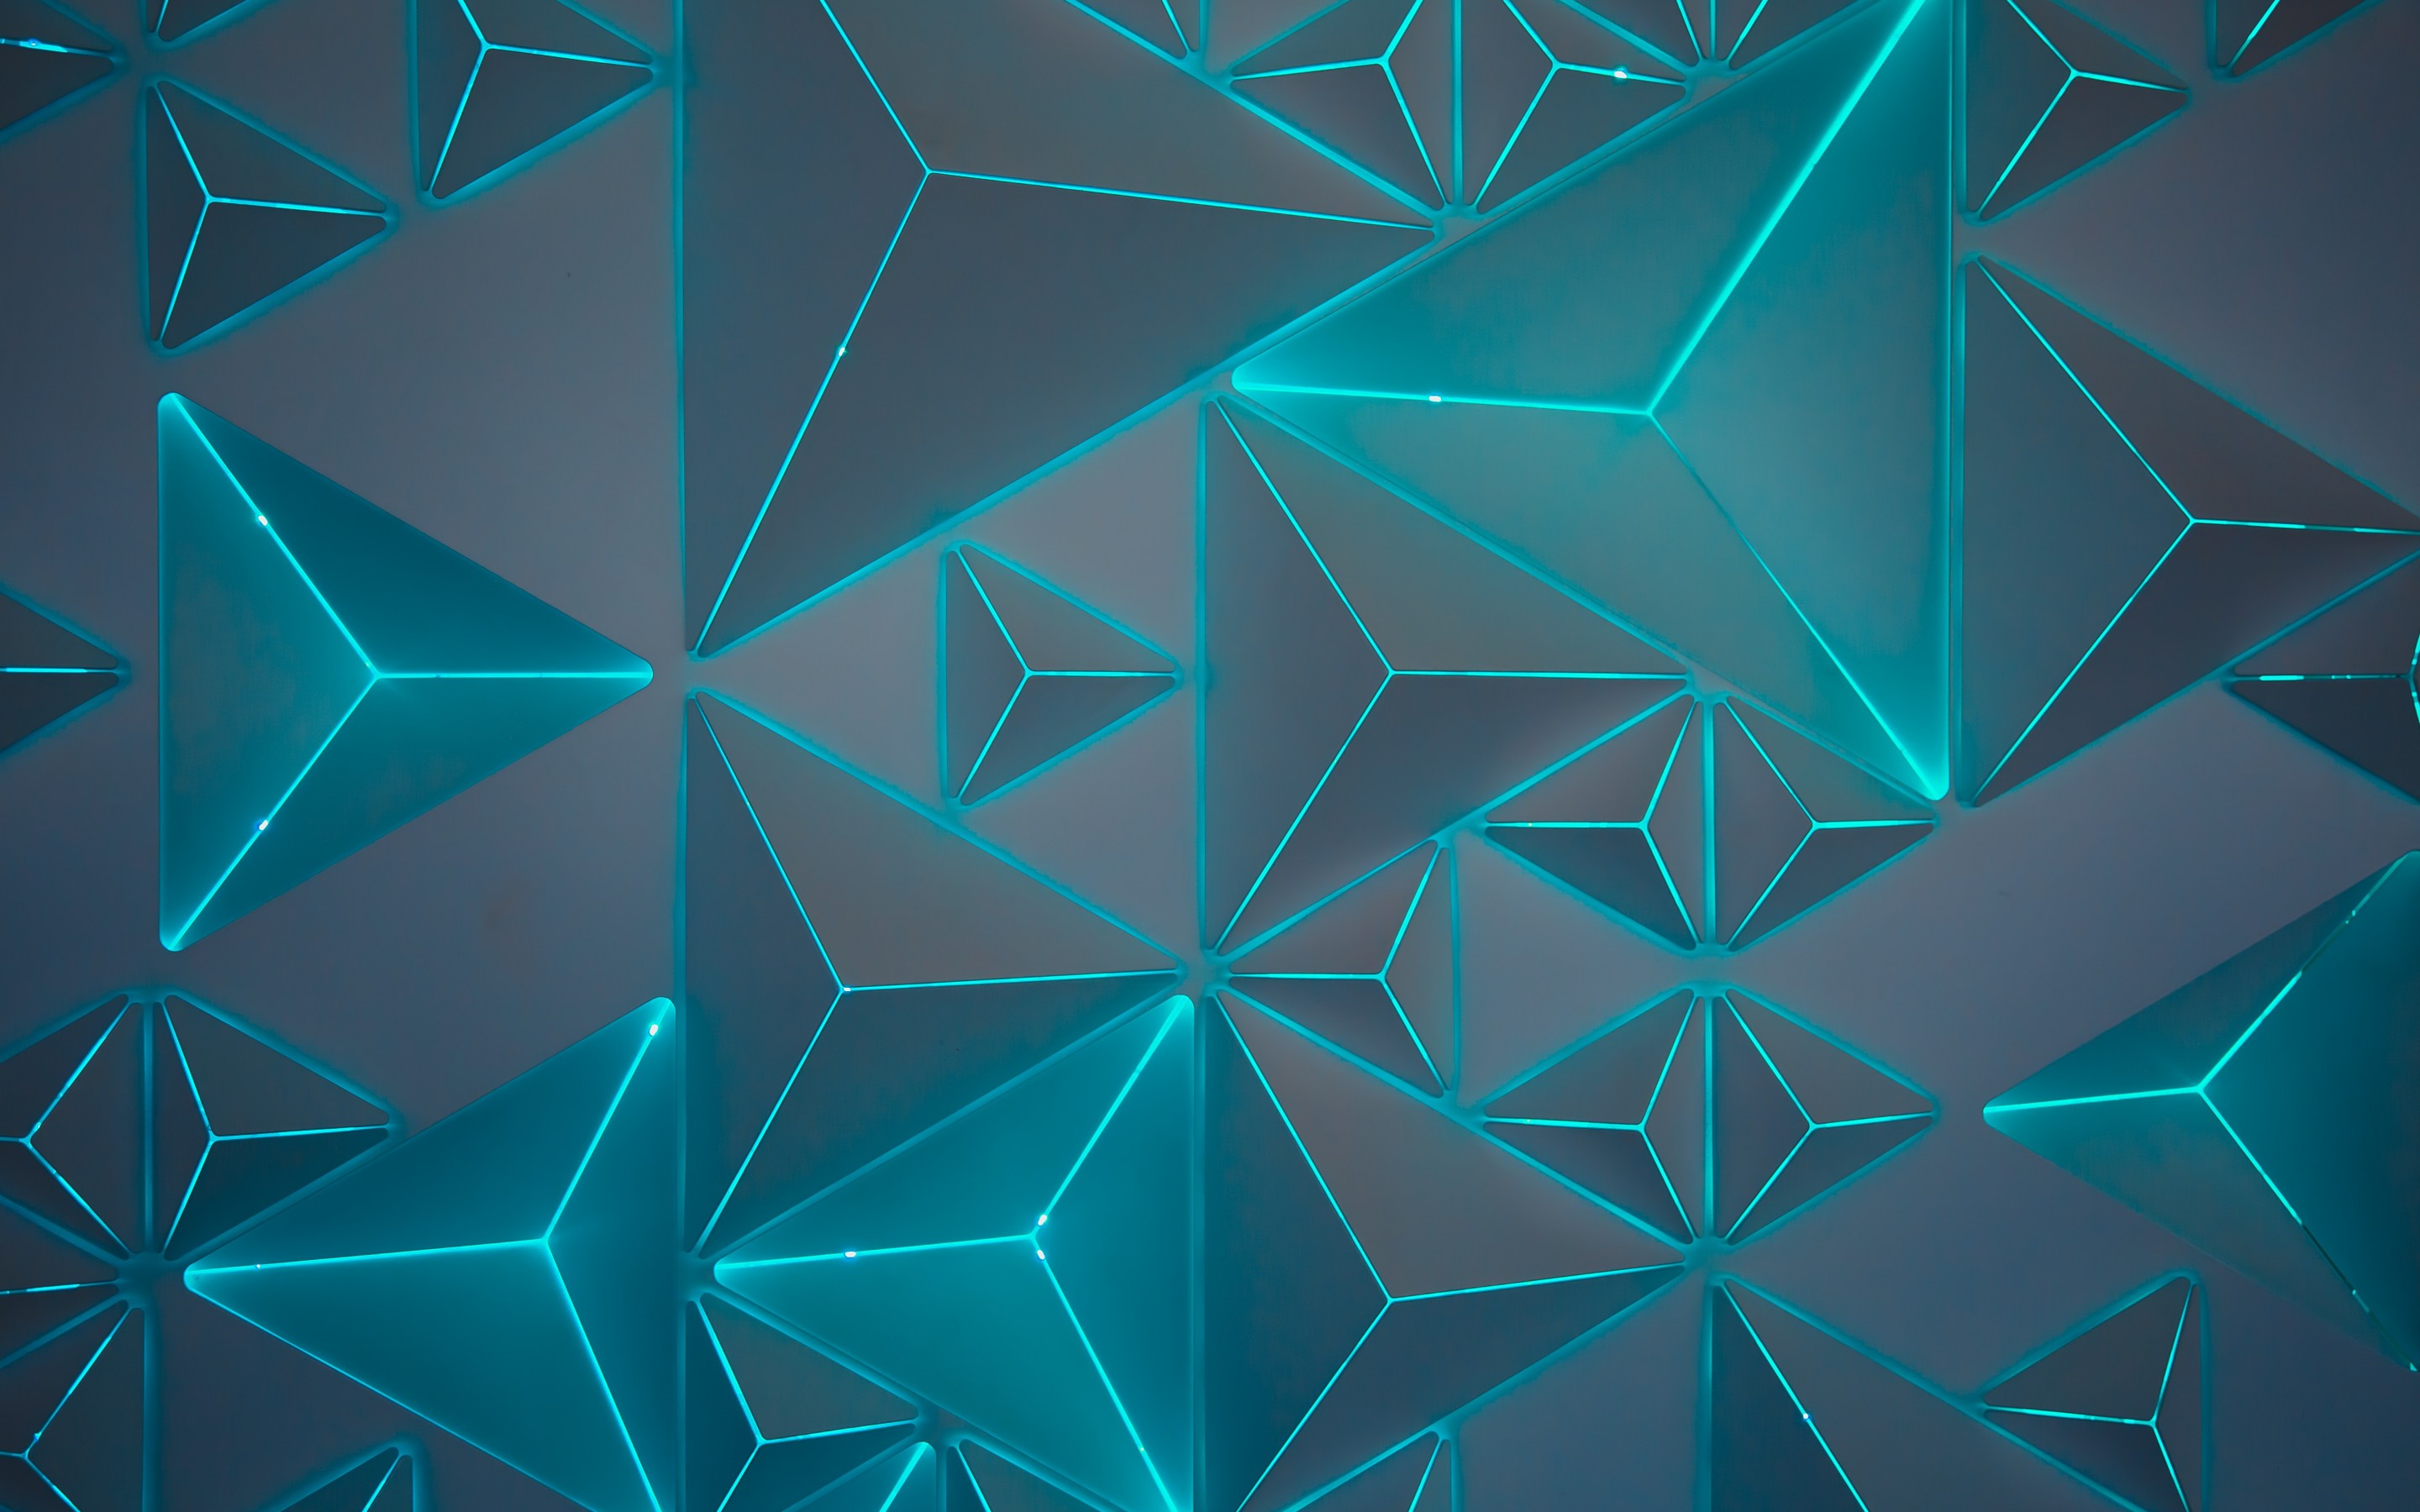 20 Perfect 4k desktop wallpaper geometric You Can Save It free ...